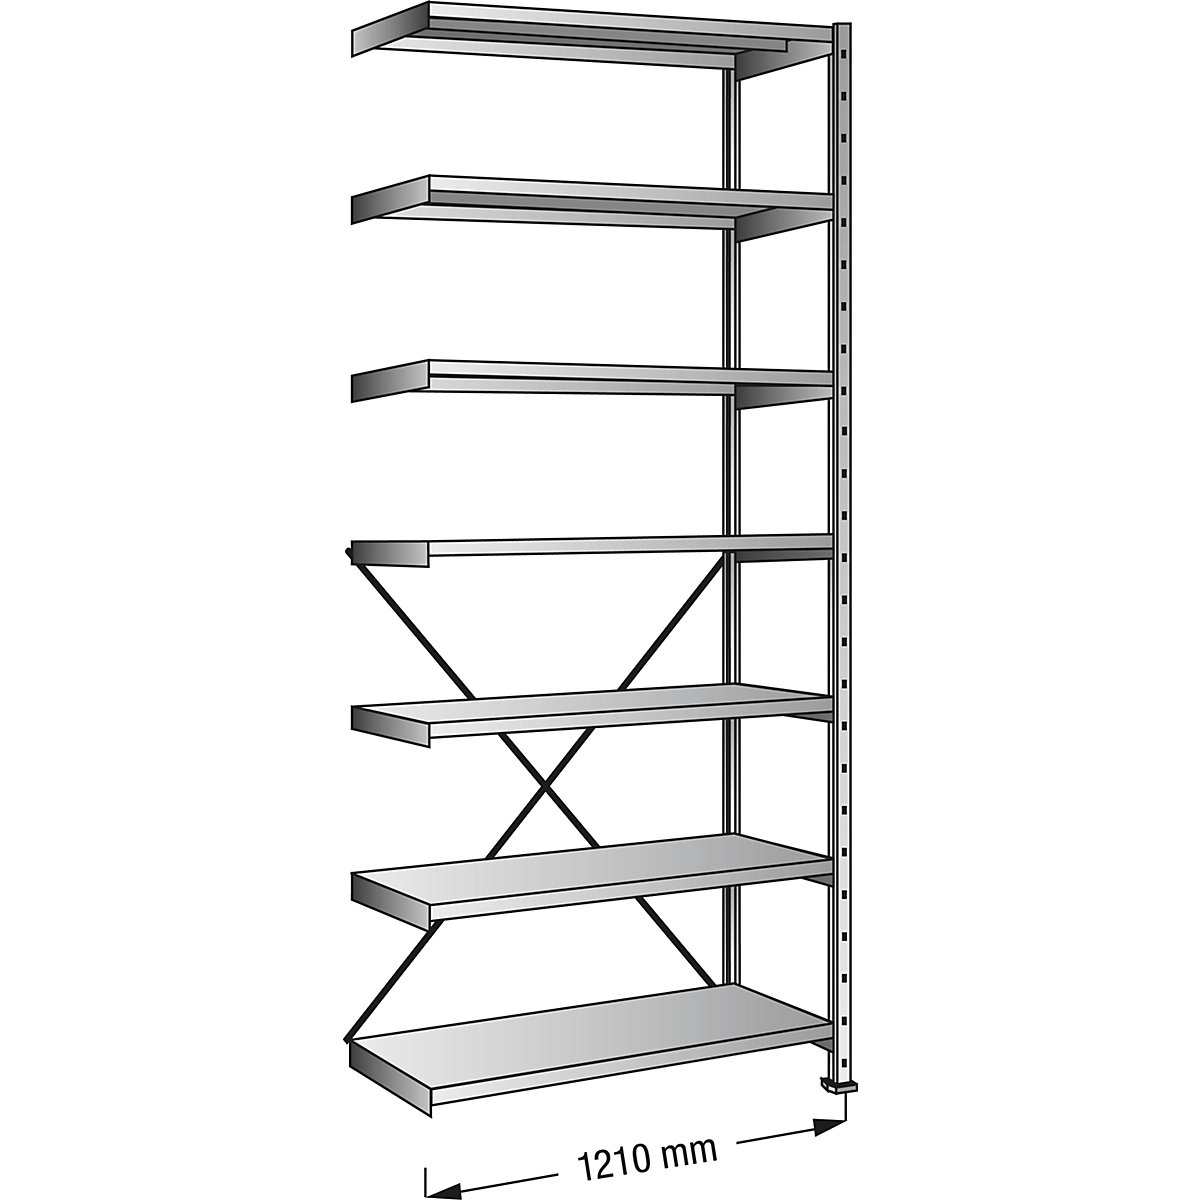 Boltless shelving unit, zinc plated, 7 shelves, height 2640 mm, shelf width 1200 mm, depth 600 mm, extension shelf unit